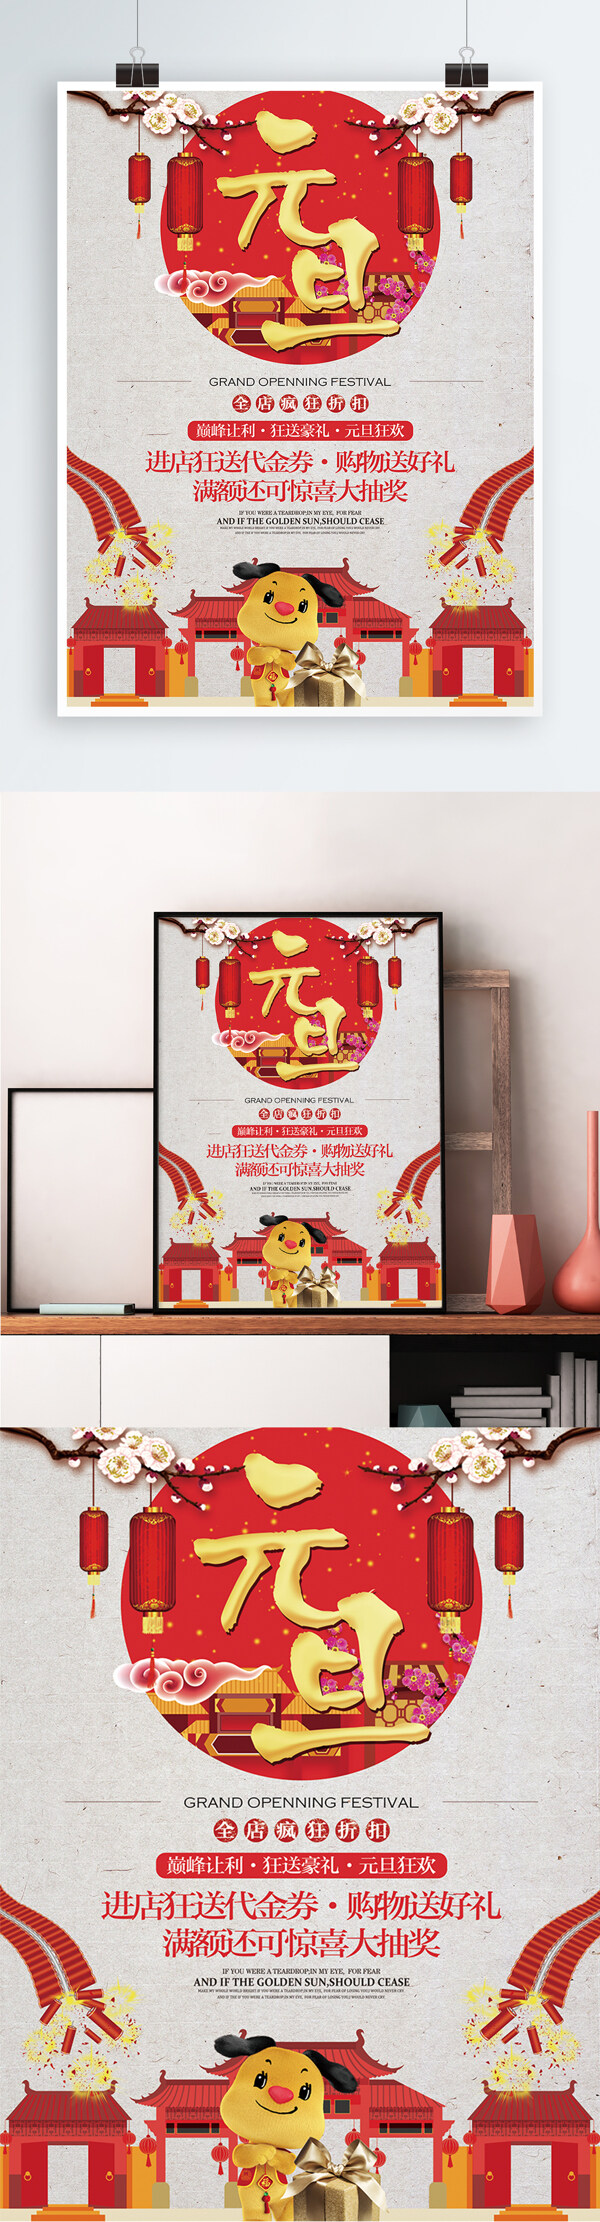 中国风喜庆狗年元旦节日宣传促销海报展板